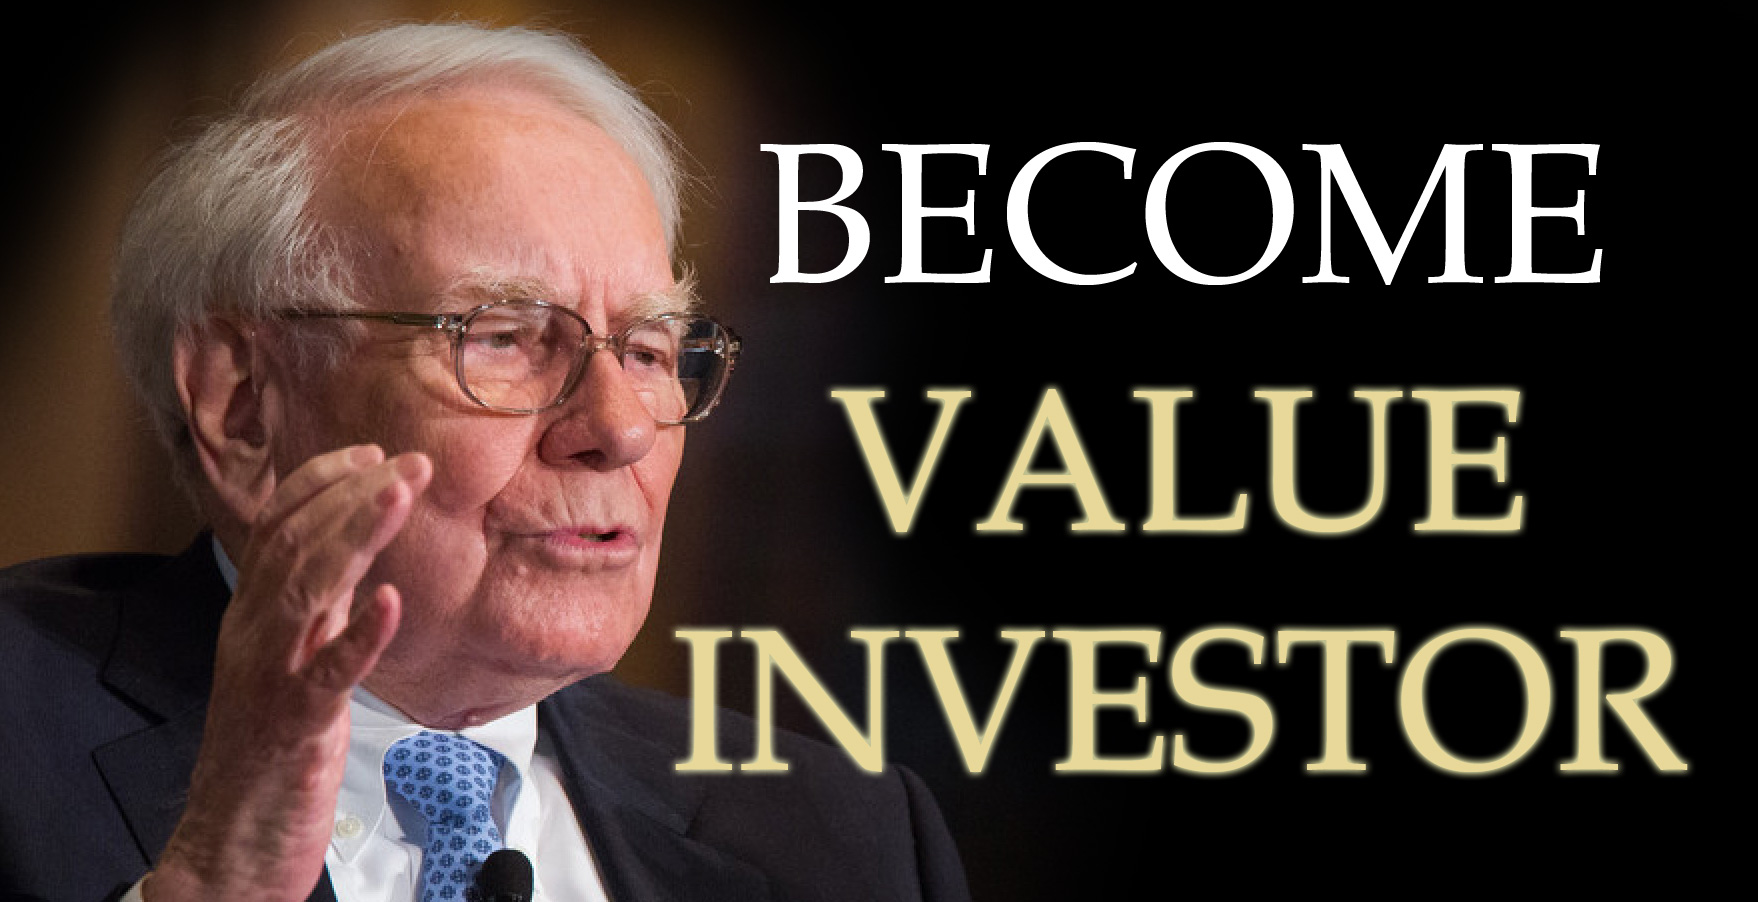 Value Investing